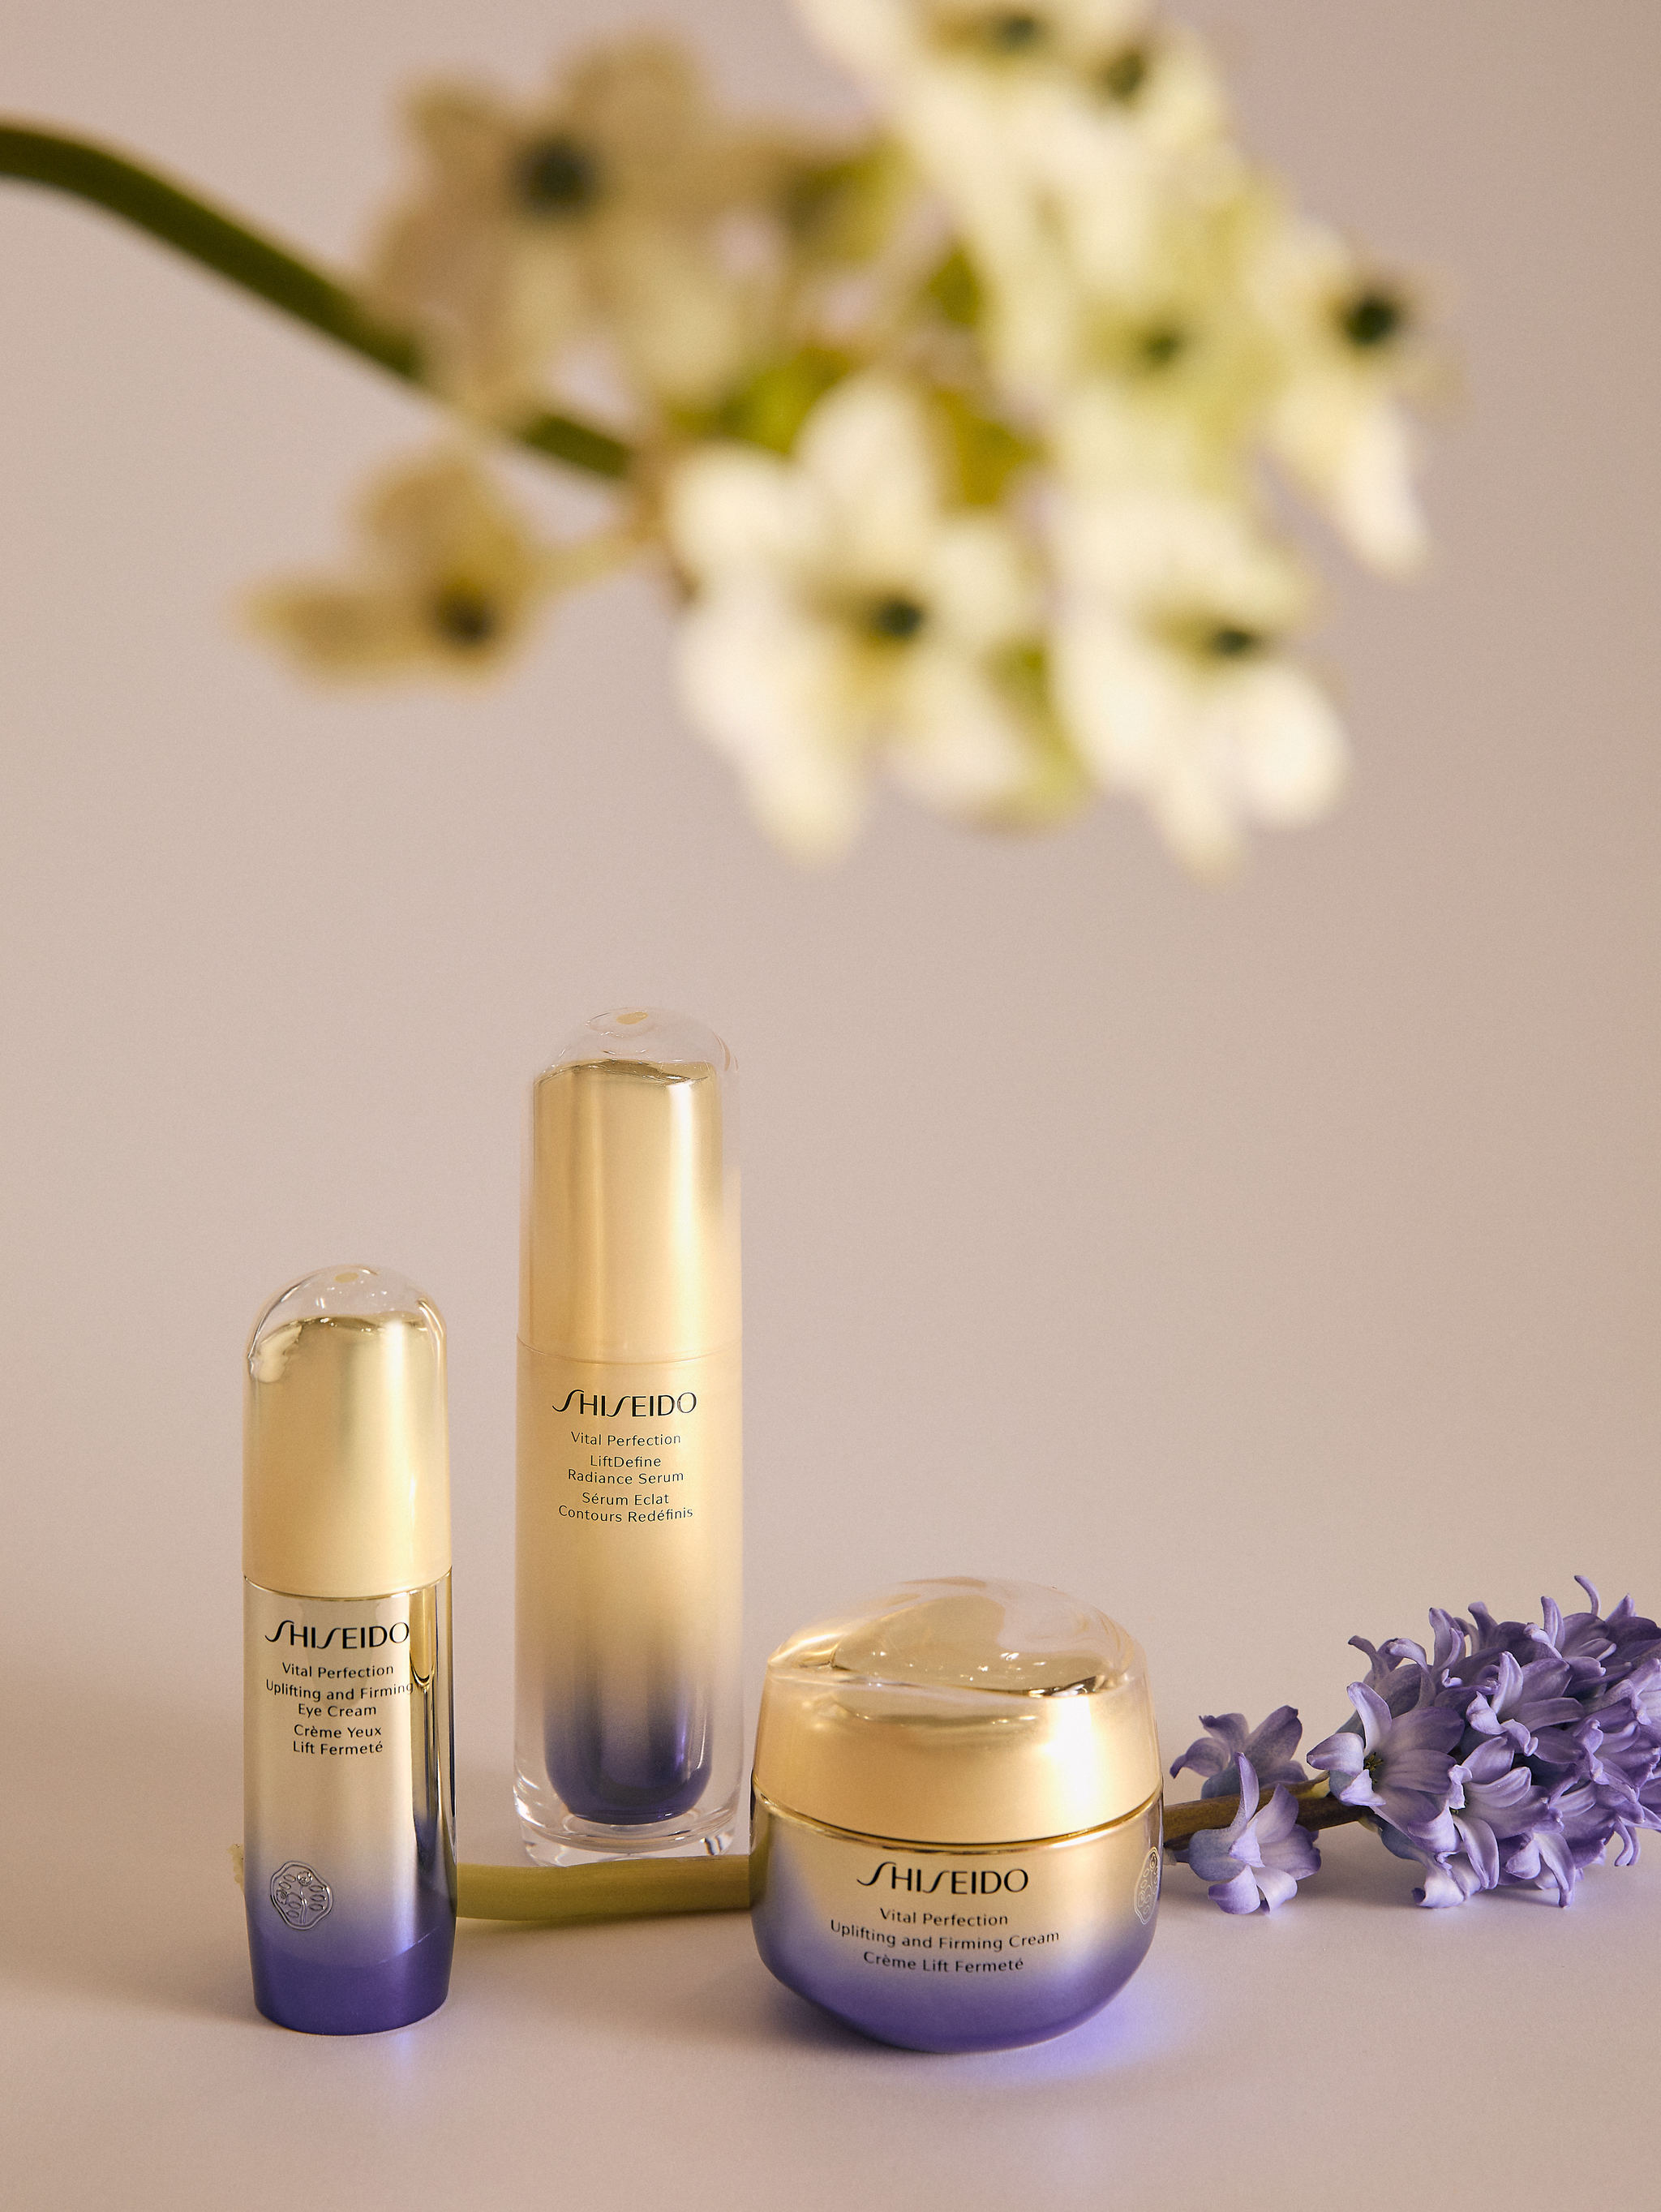 Trío ganador para un efecto 'lifting' definitvo: LiftDefine Radiance Serum, Uplifting & Firming Cream y contorno de ojos Uplifting & Firming. Todo de la gama Vital Perfection, de Shiseido.